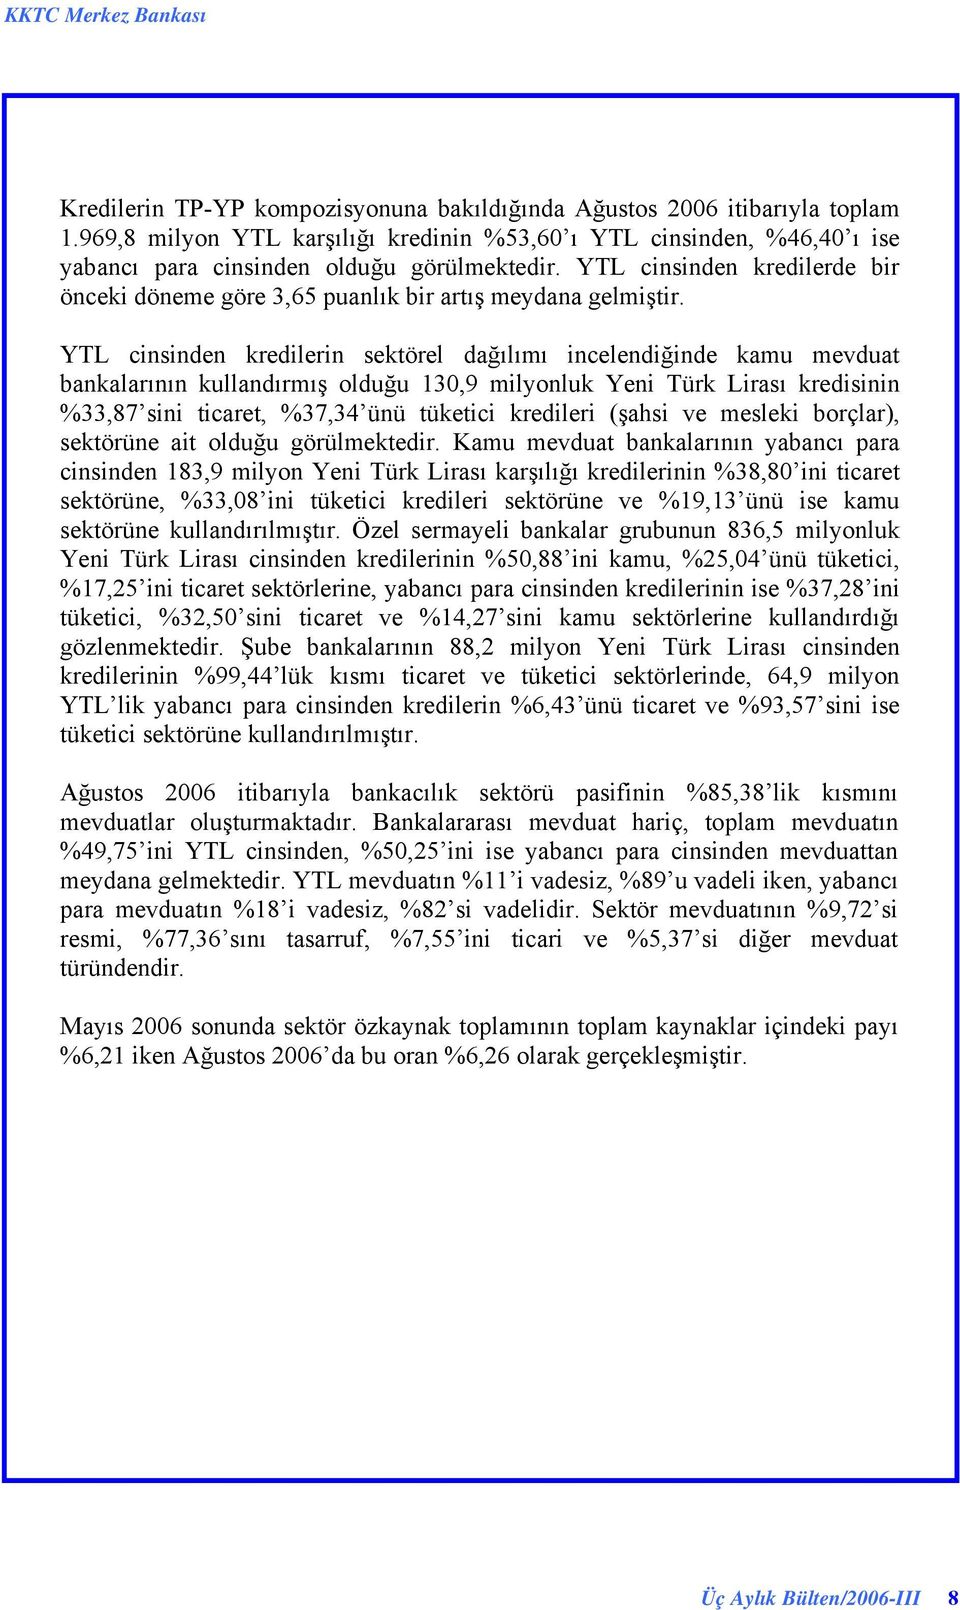 YTL cinsinden kredilerin sektörel dağılımı incelendiğinde kamu mevduat bankalarının kullandırmış olduğu 130,9 milyonluk Yeni Türk Lirası kredisinin %33,87 sini ticaret, %37,34 ünü tüketici kredileri